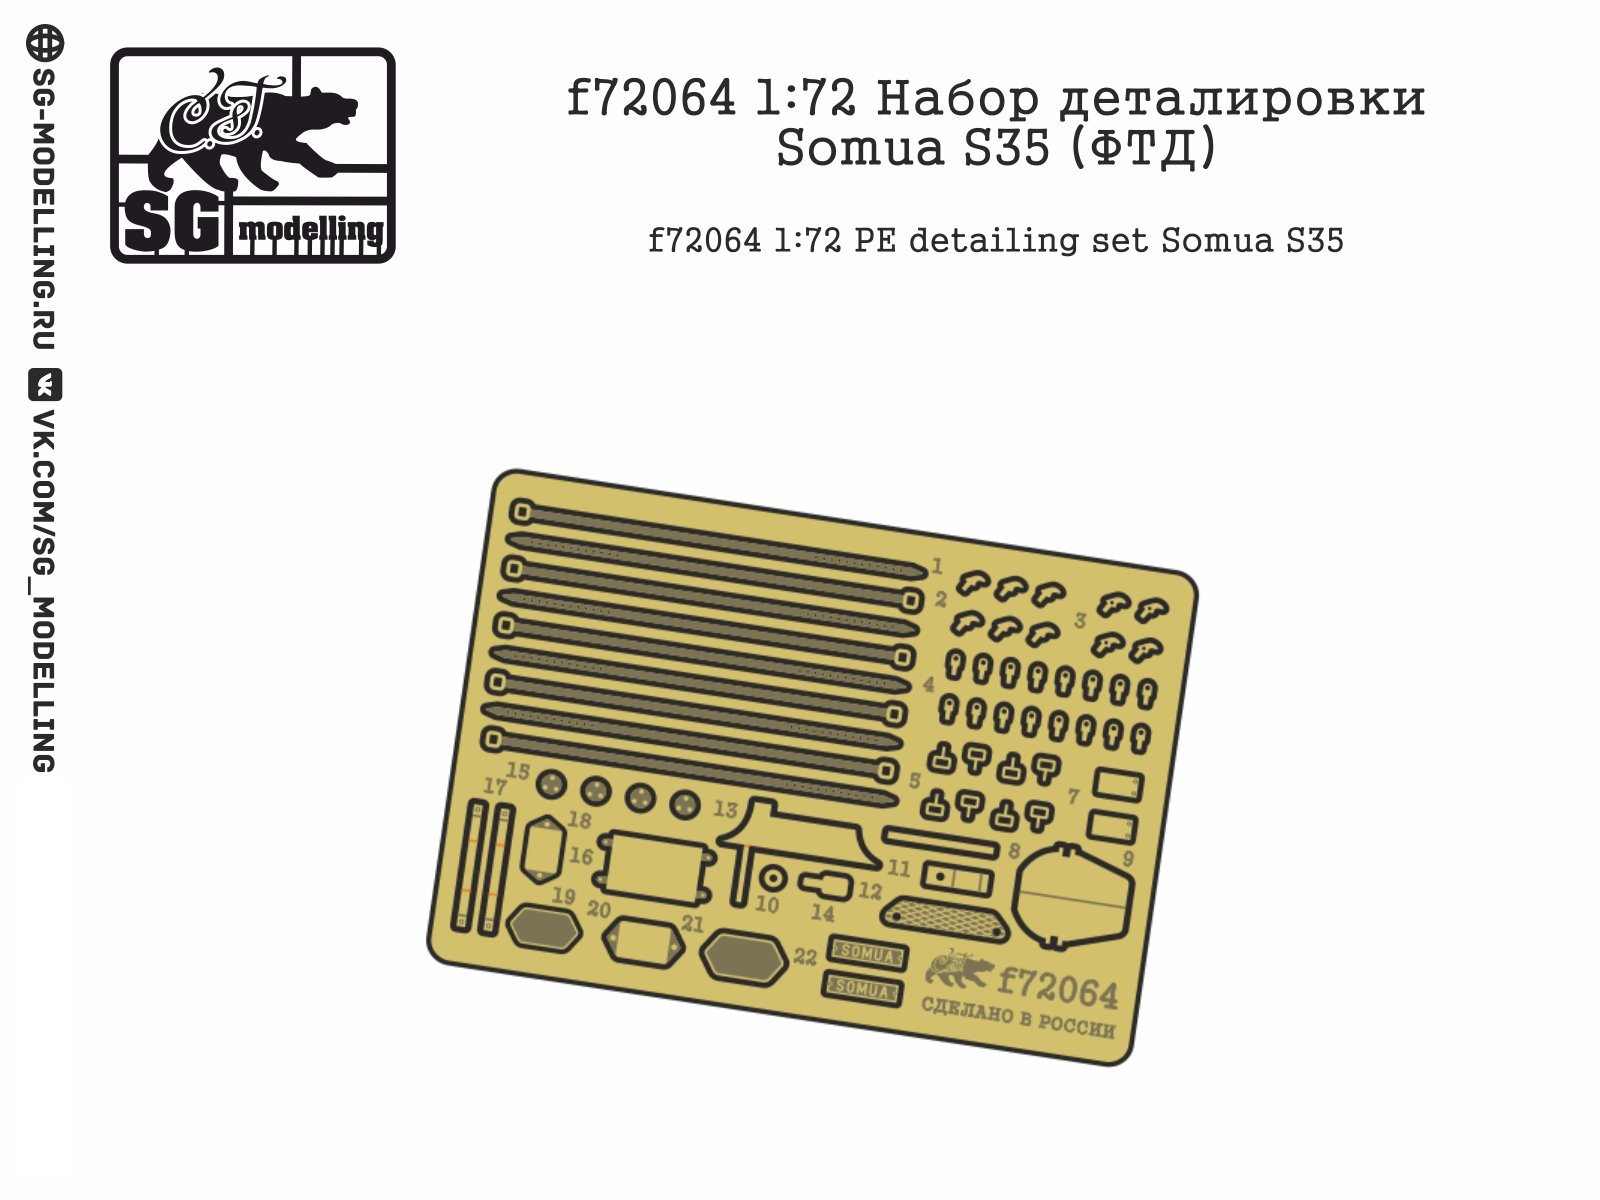 F72064 1:72 Detachment of the somua s35 details (FTD) - imodeller.store